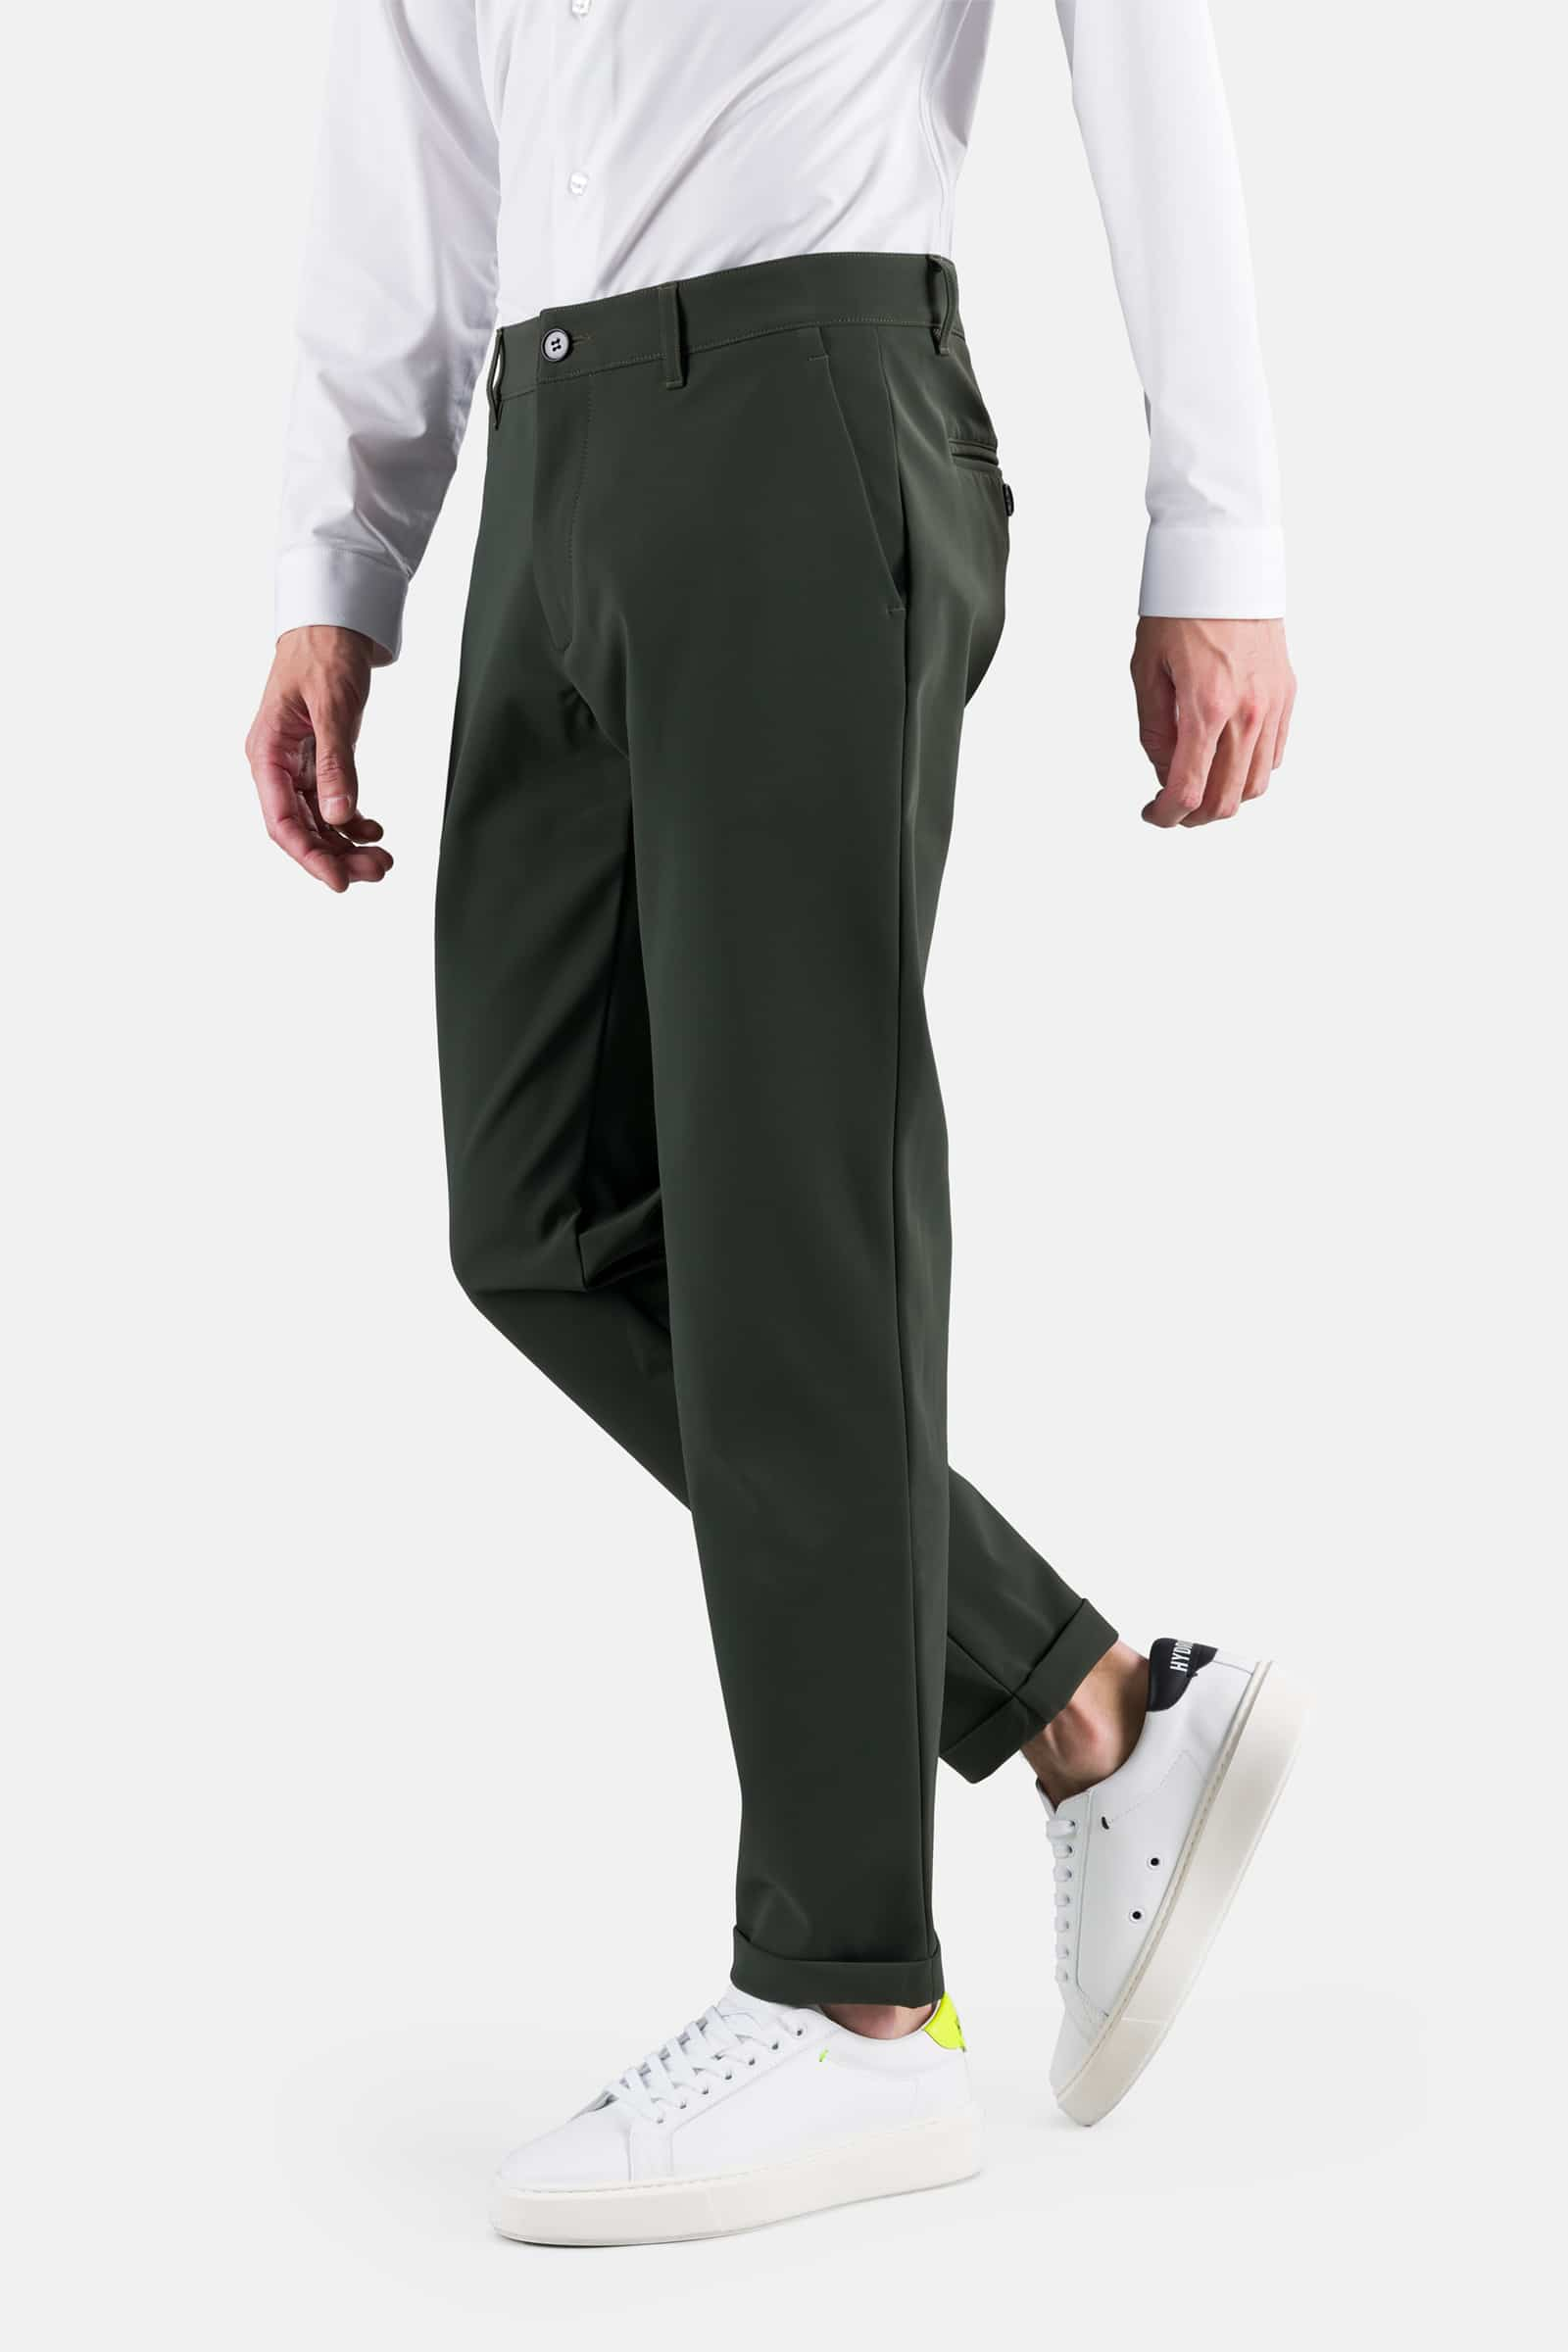 CLASSIC PANTS - MILITARY GREEN - Hydrogen - Luxury Sportwear